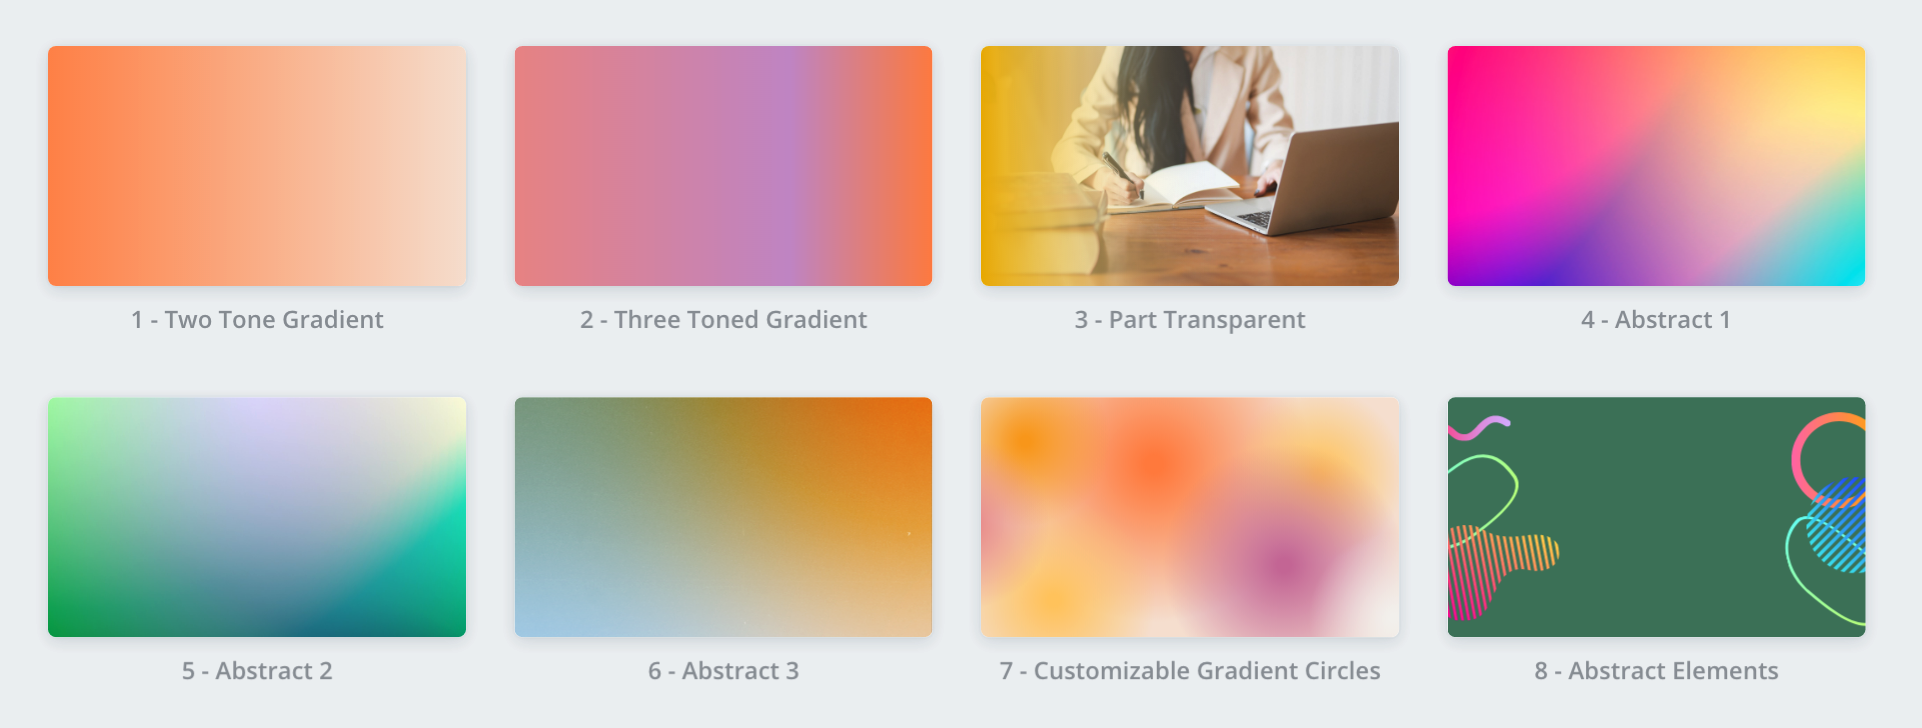 Hướng dẫn chi tiết về Gradient trên Squarespace và Canva - thiết kế website Nếu bạn là một người sáng tạo và muốn thể hiện bản thân với các gradient độc đáo, hãy tham khảo \